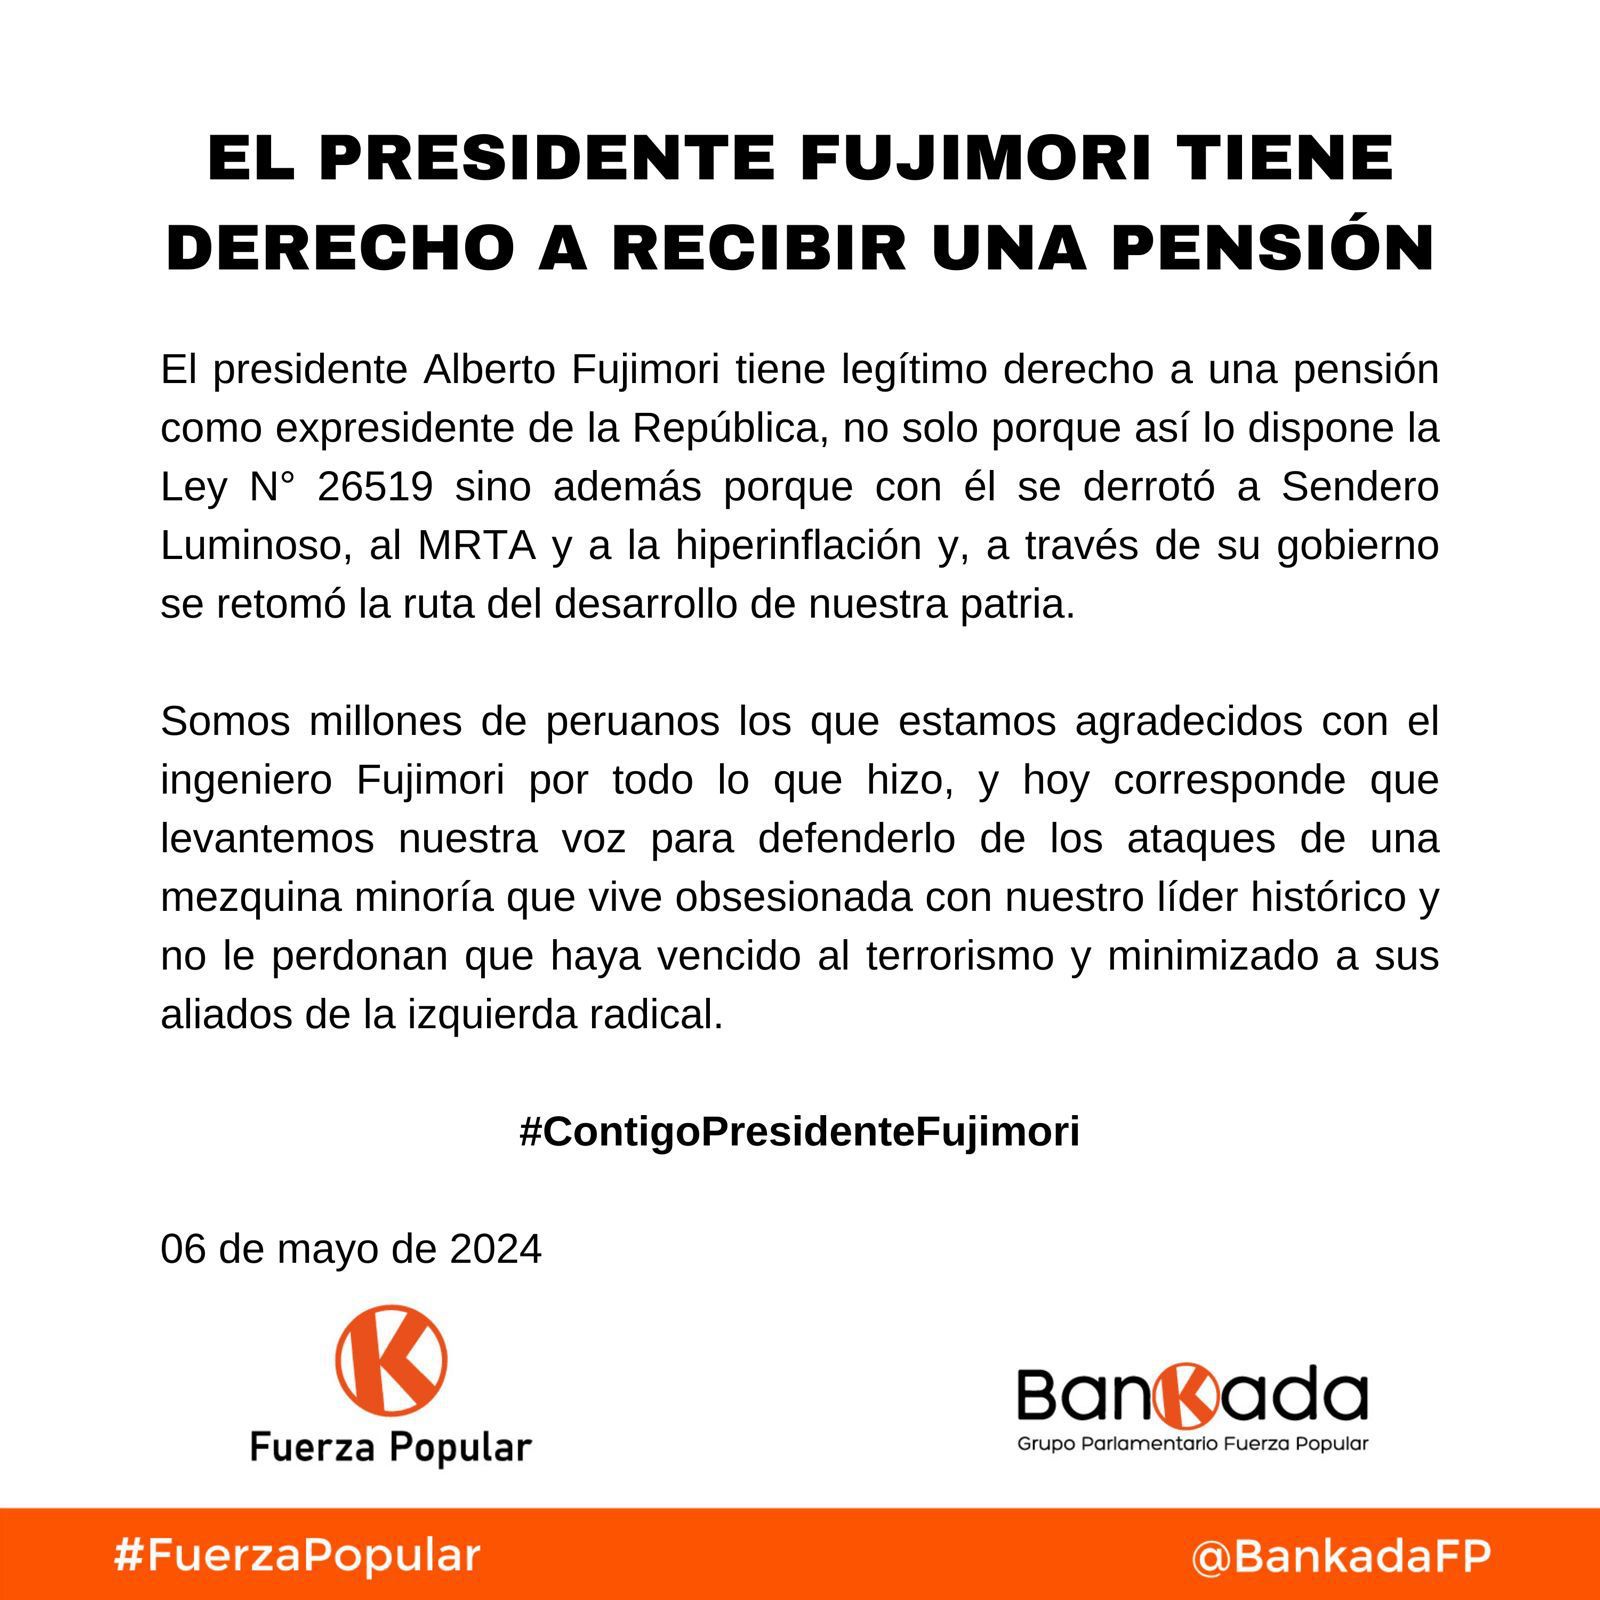 El partido y la bancada de Fuerza Popular respaldaron pedido de Alberto Fujimori para que se le otorgue una pensión en su condición de expresidente.